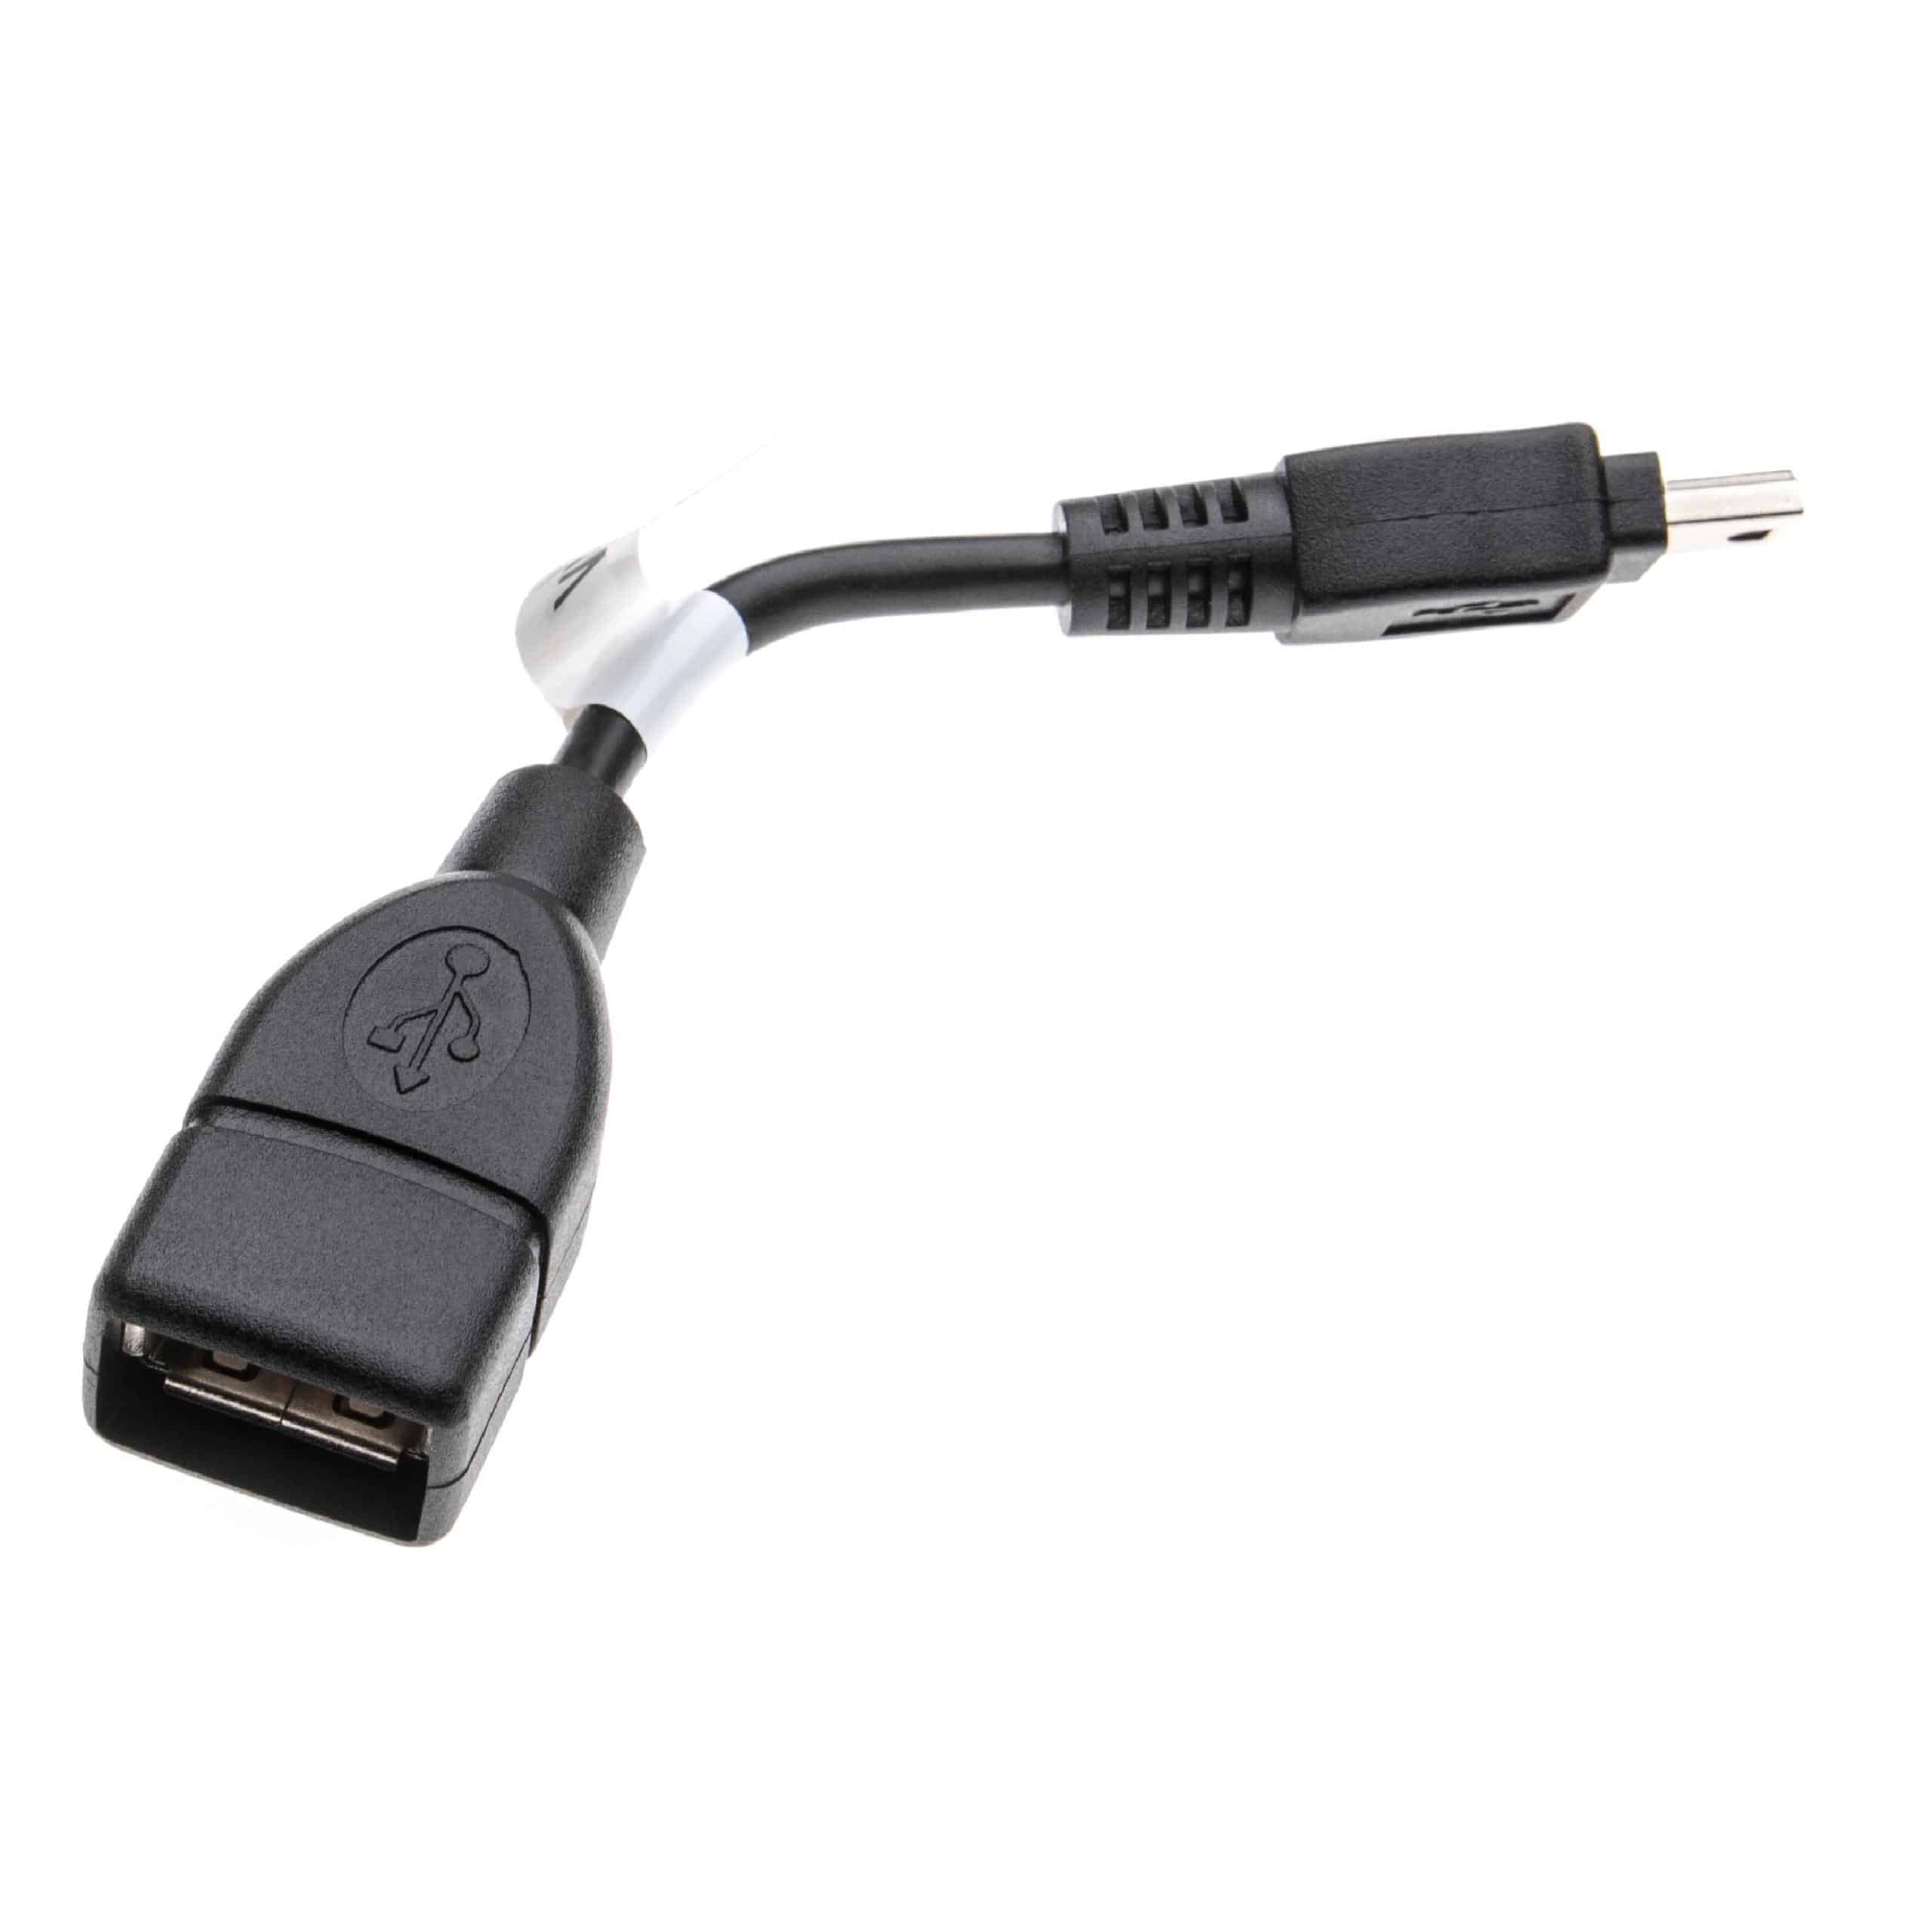 Adapteur OTG Mini-USB (männlich) à prise USB A pour smartphone, tablette, ordinateur portable